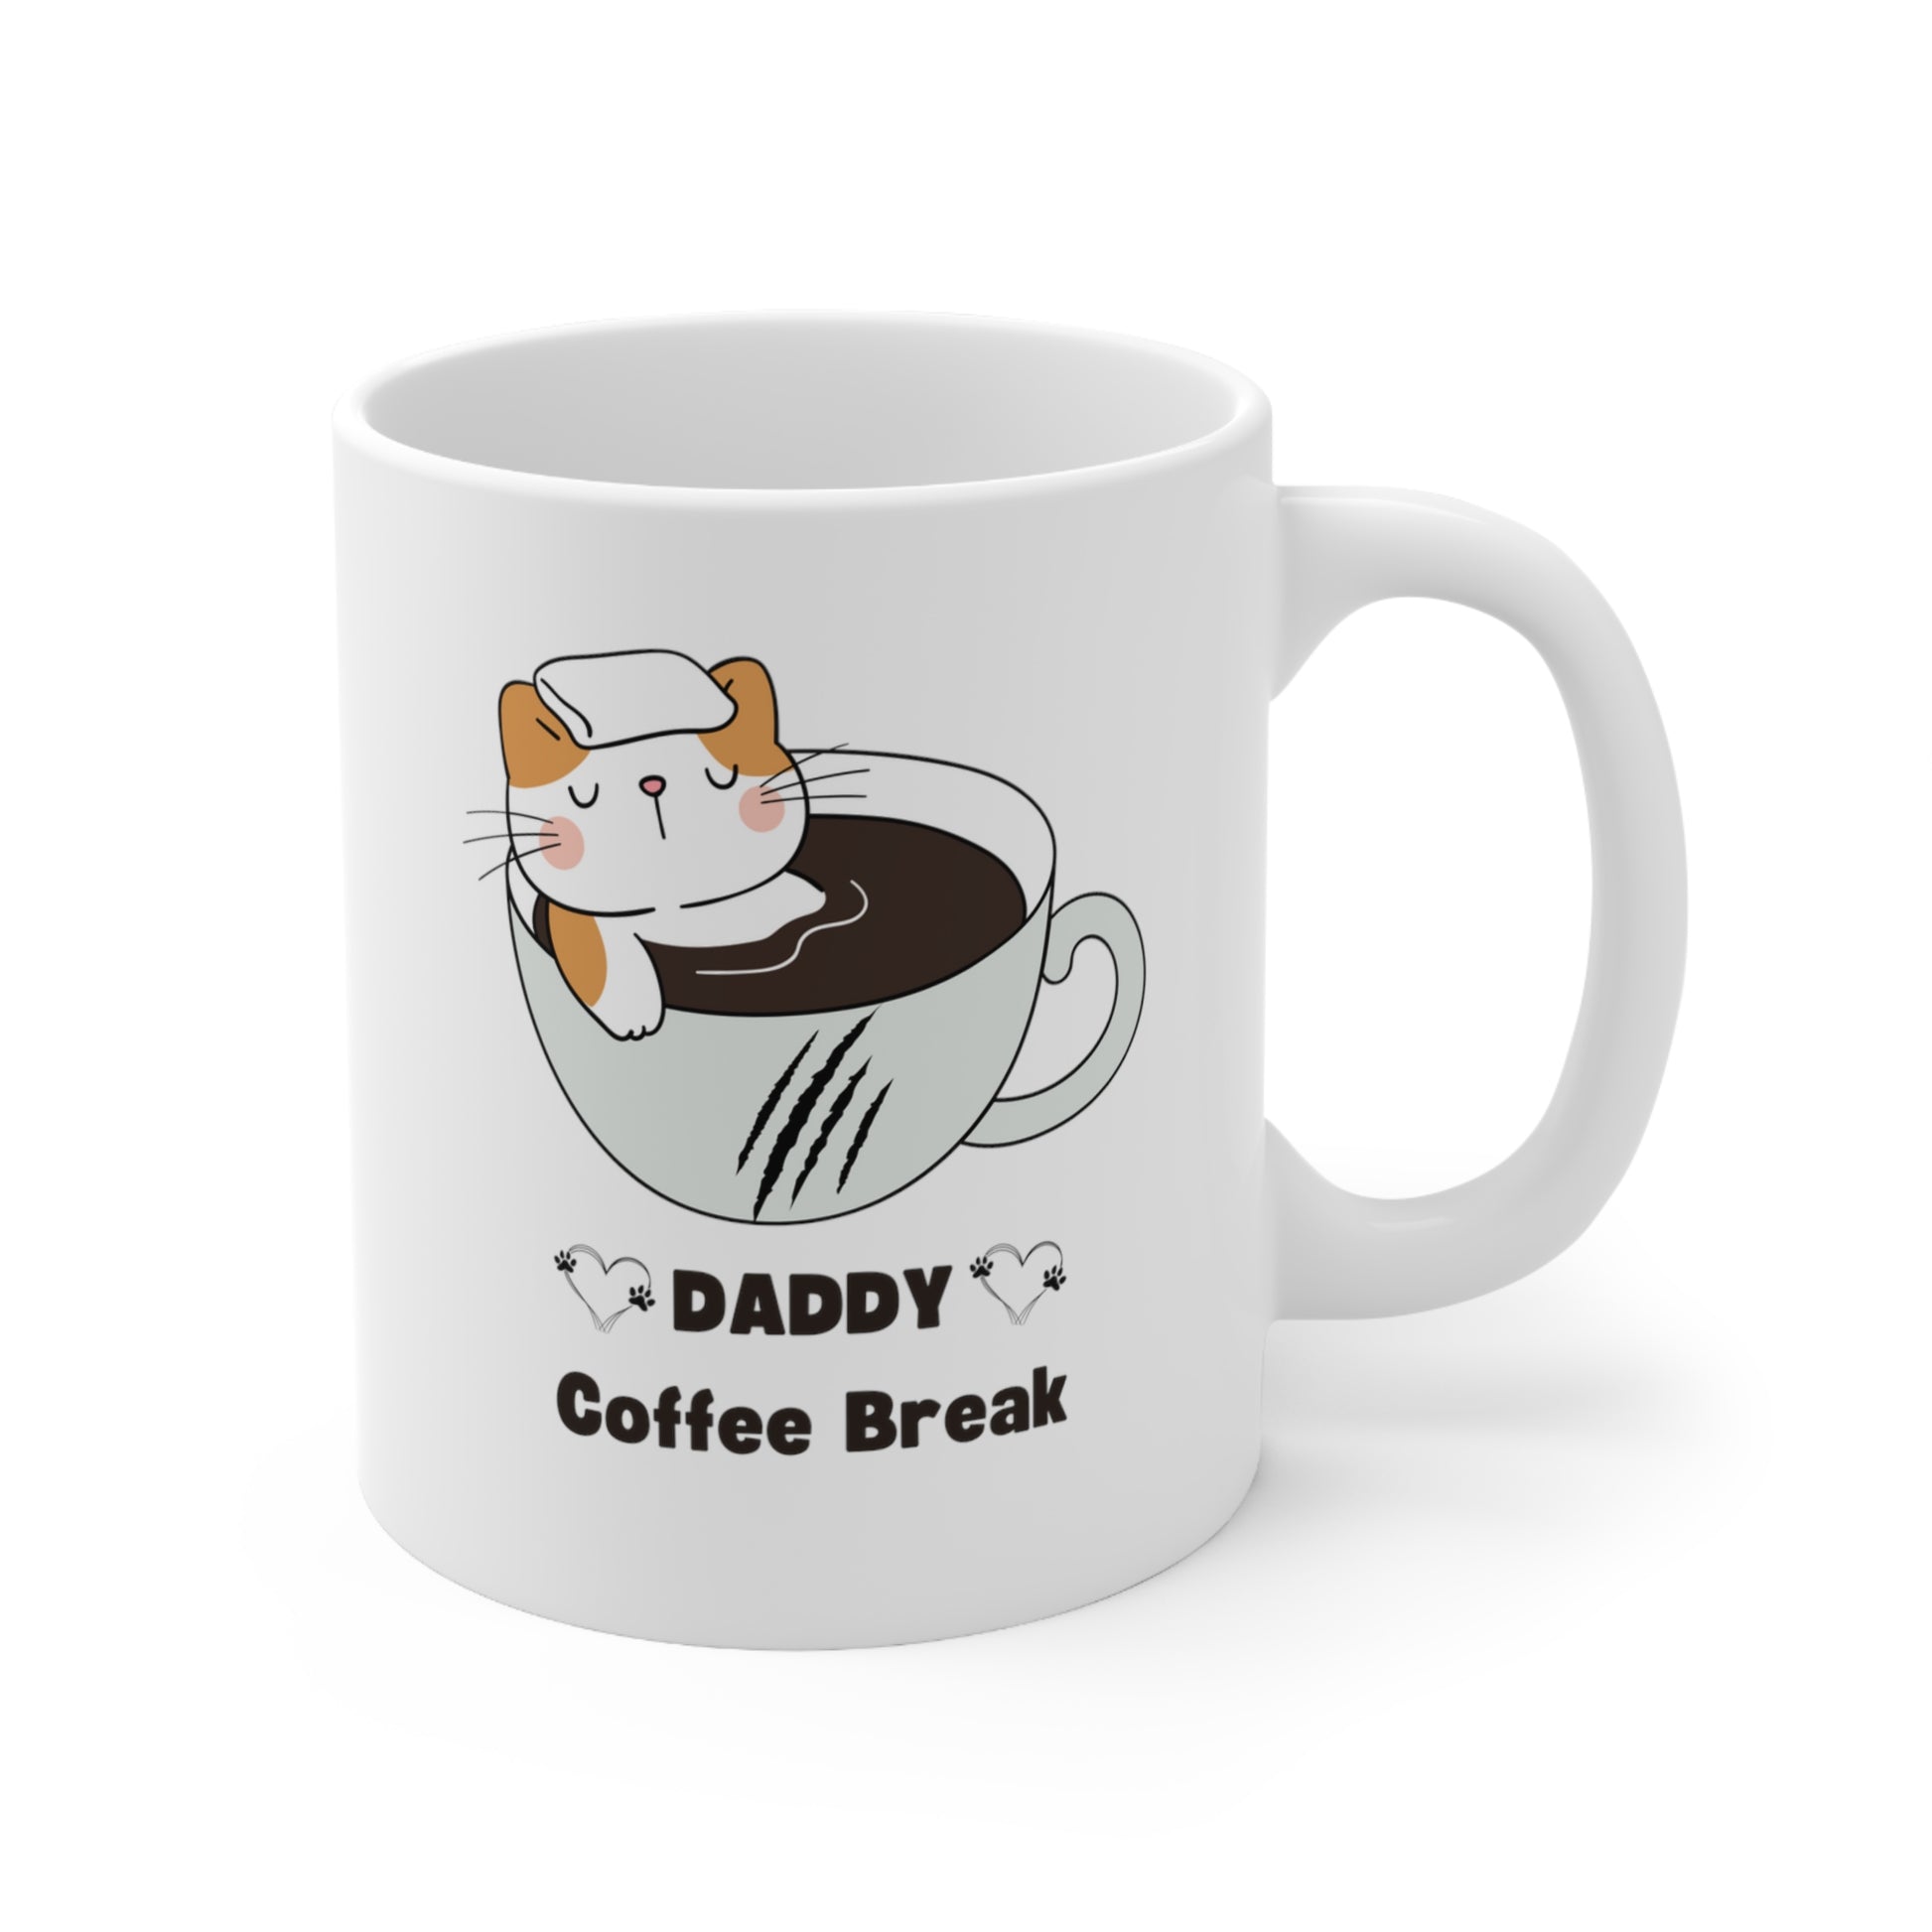 Daddy Coffee Break Ceramic Mug, Best Gift for Dad